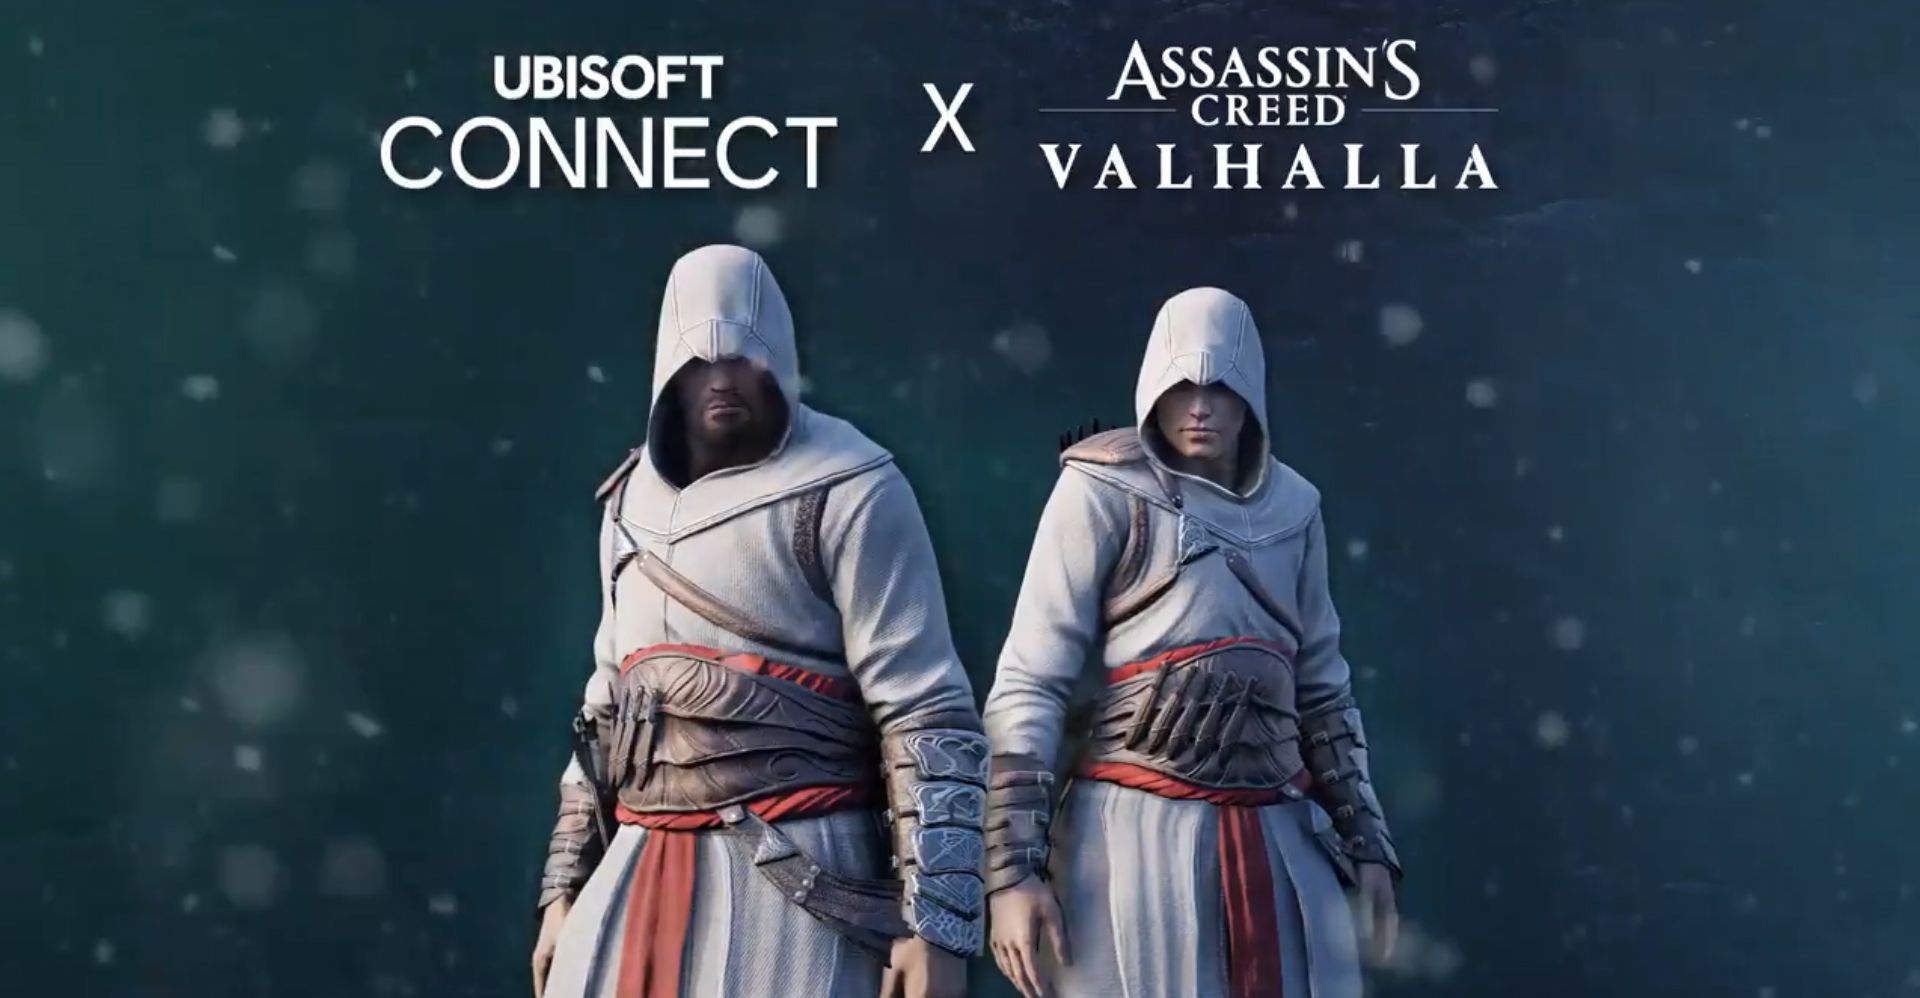 Le costume d’Altaïr disponible gratuitement dans Assassin’s Creed Valhalla